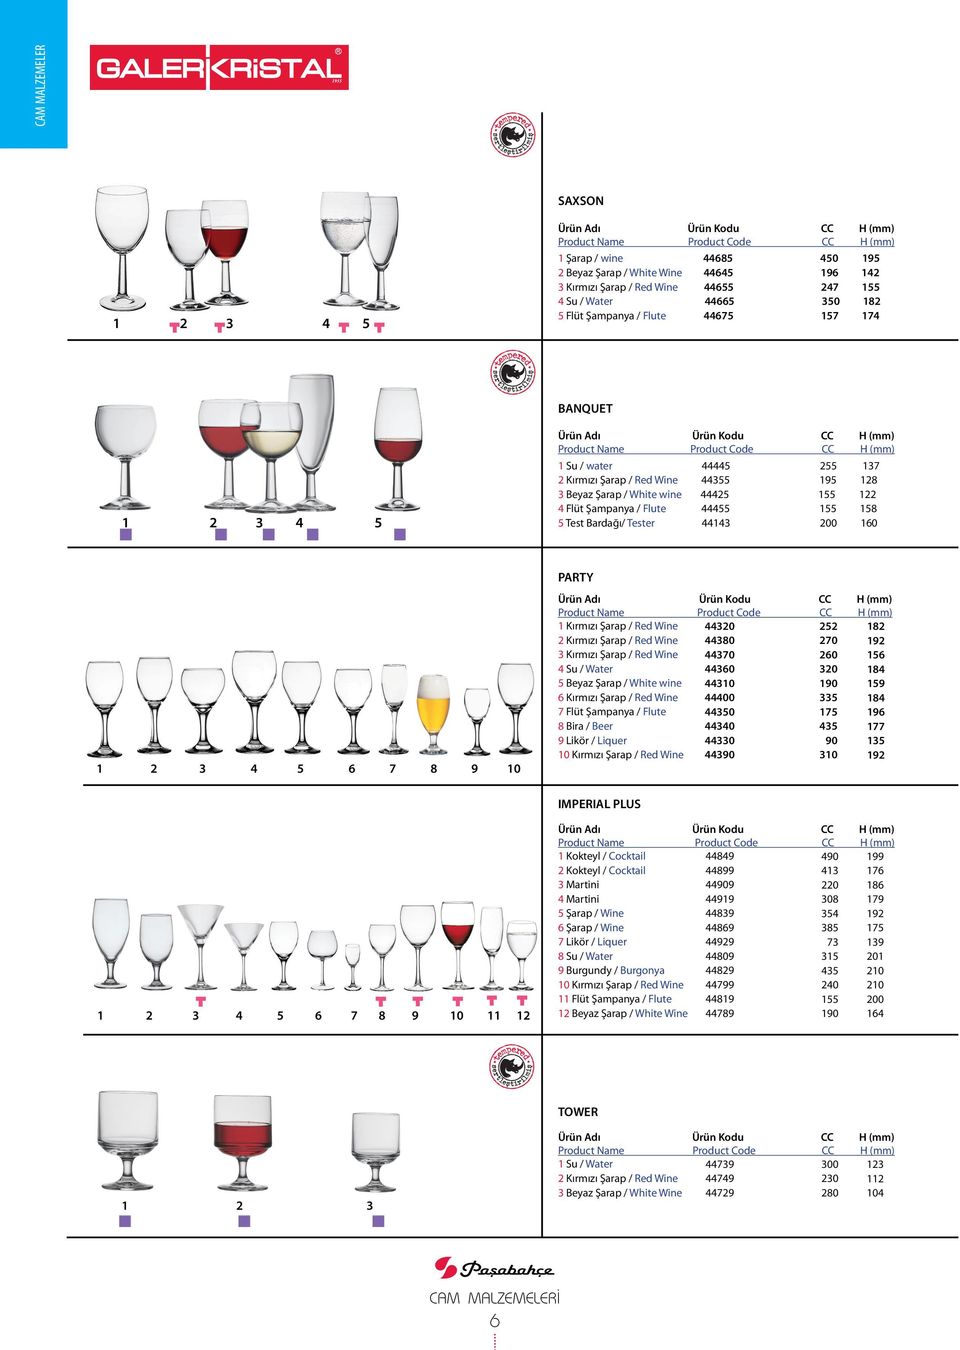 Kırmızı Şarap / Red Wine 2 Kırmızı Şarap / Red Wine 3 Kırmızı Şarap / Red Wine 4 Su / Water 5 Beyaz Şarap / White wine 6 Kırmızı Şarap / Red Wine 7 Flüt Şampanya / Flute 8 Bira / Beer 9 Likör /